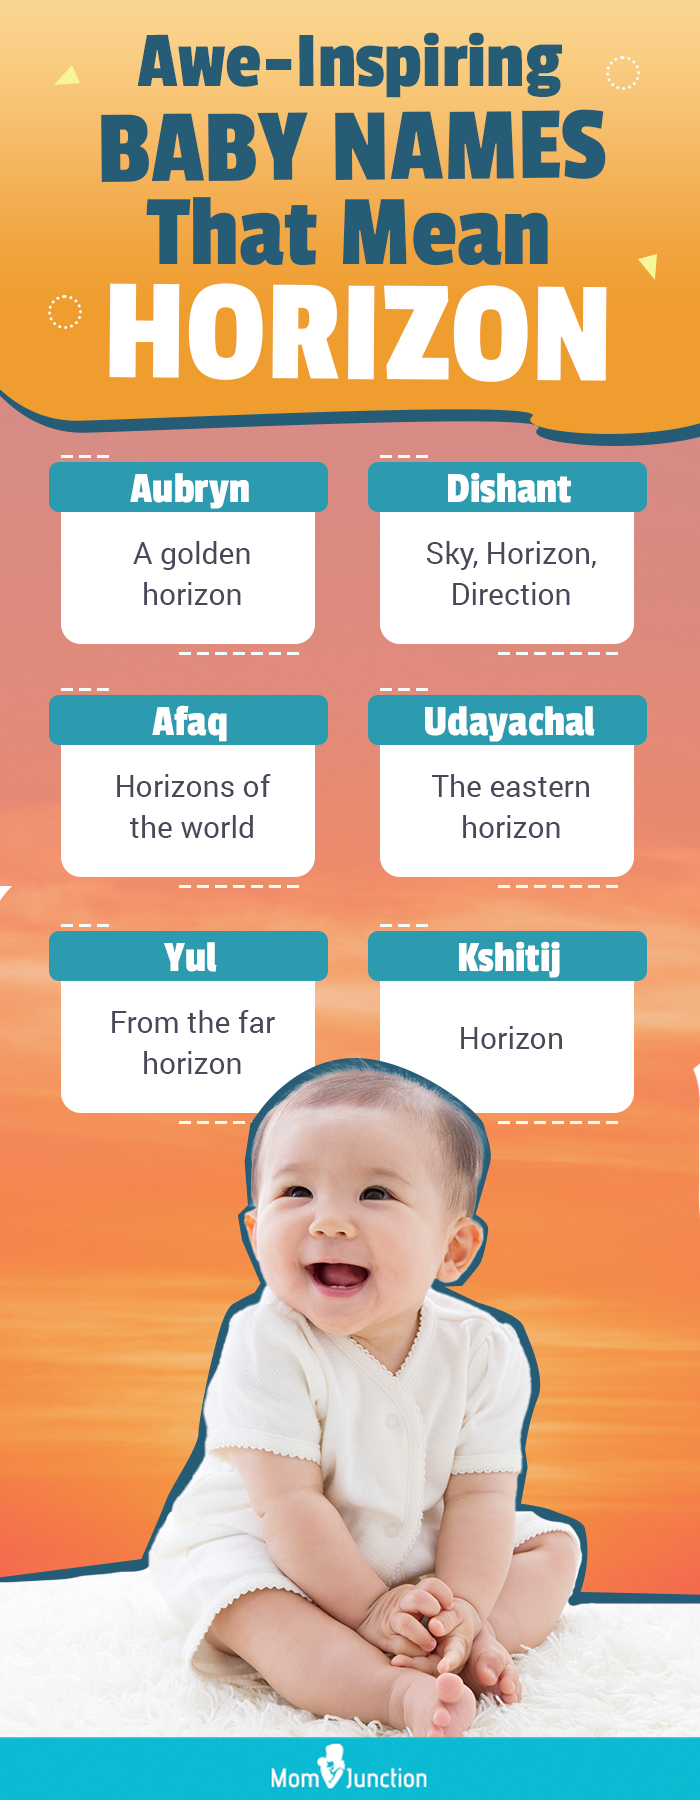 awe inspiring baby names that mean horizon(infographic)